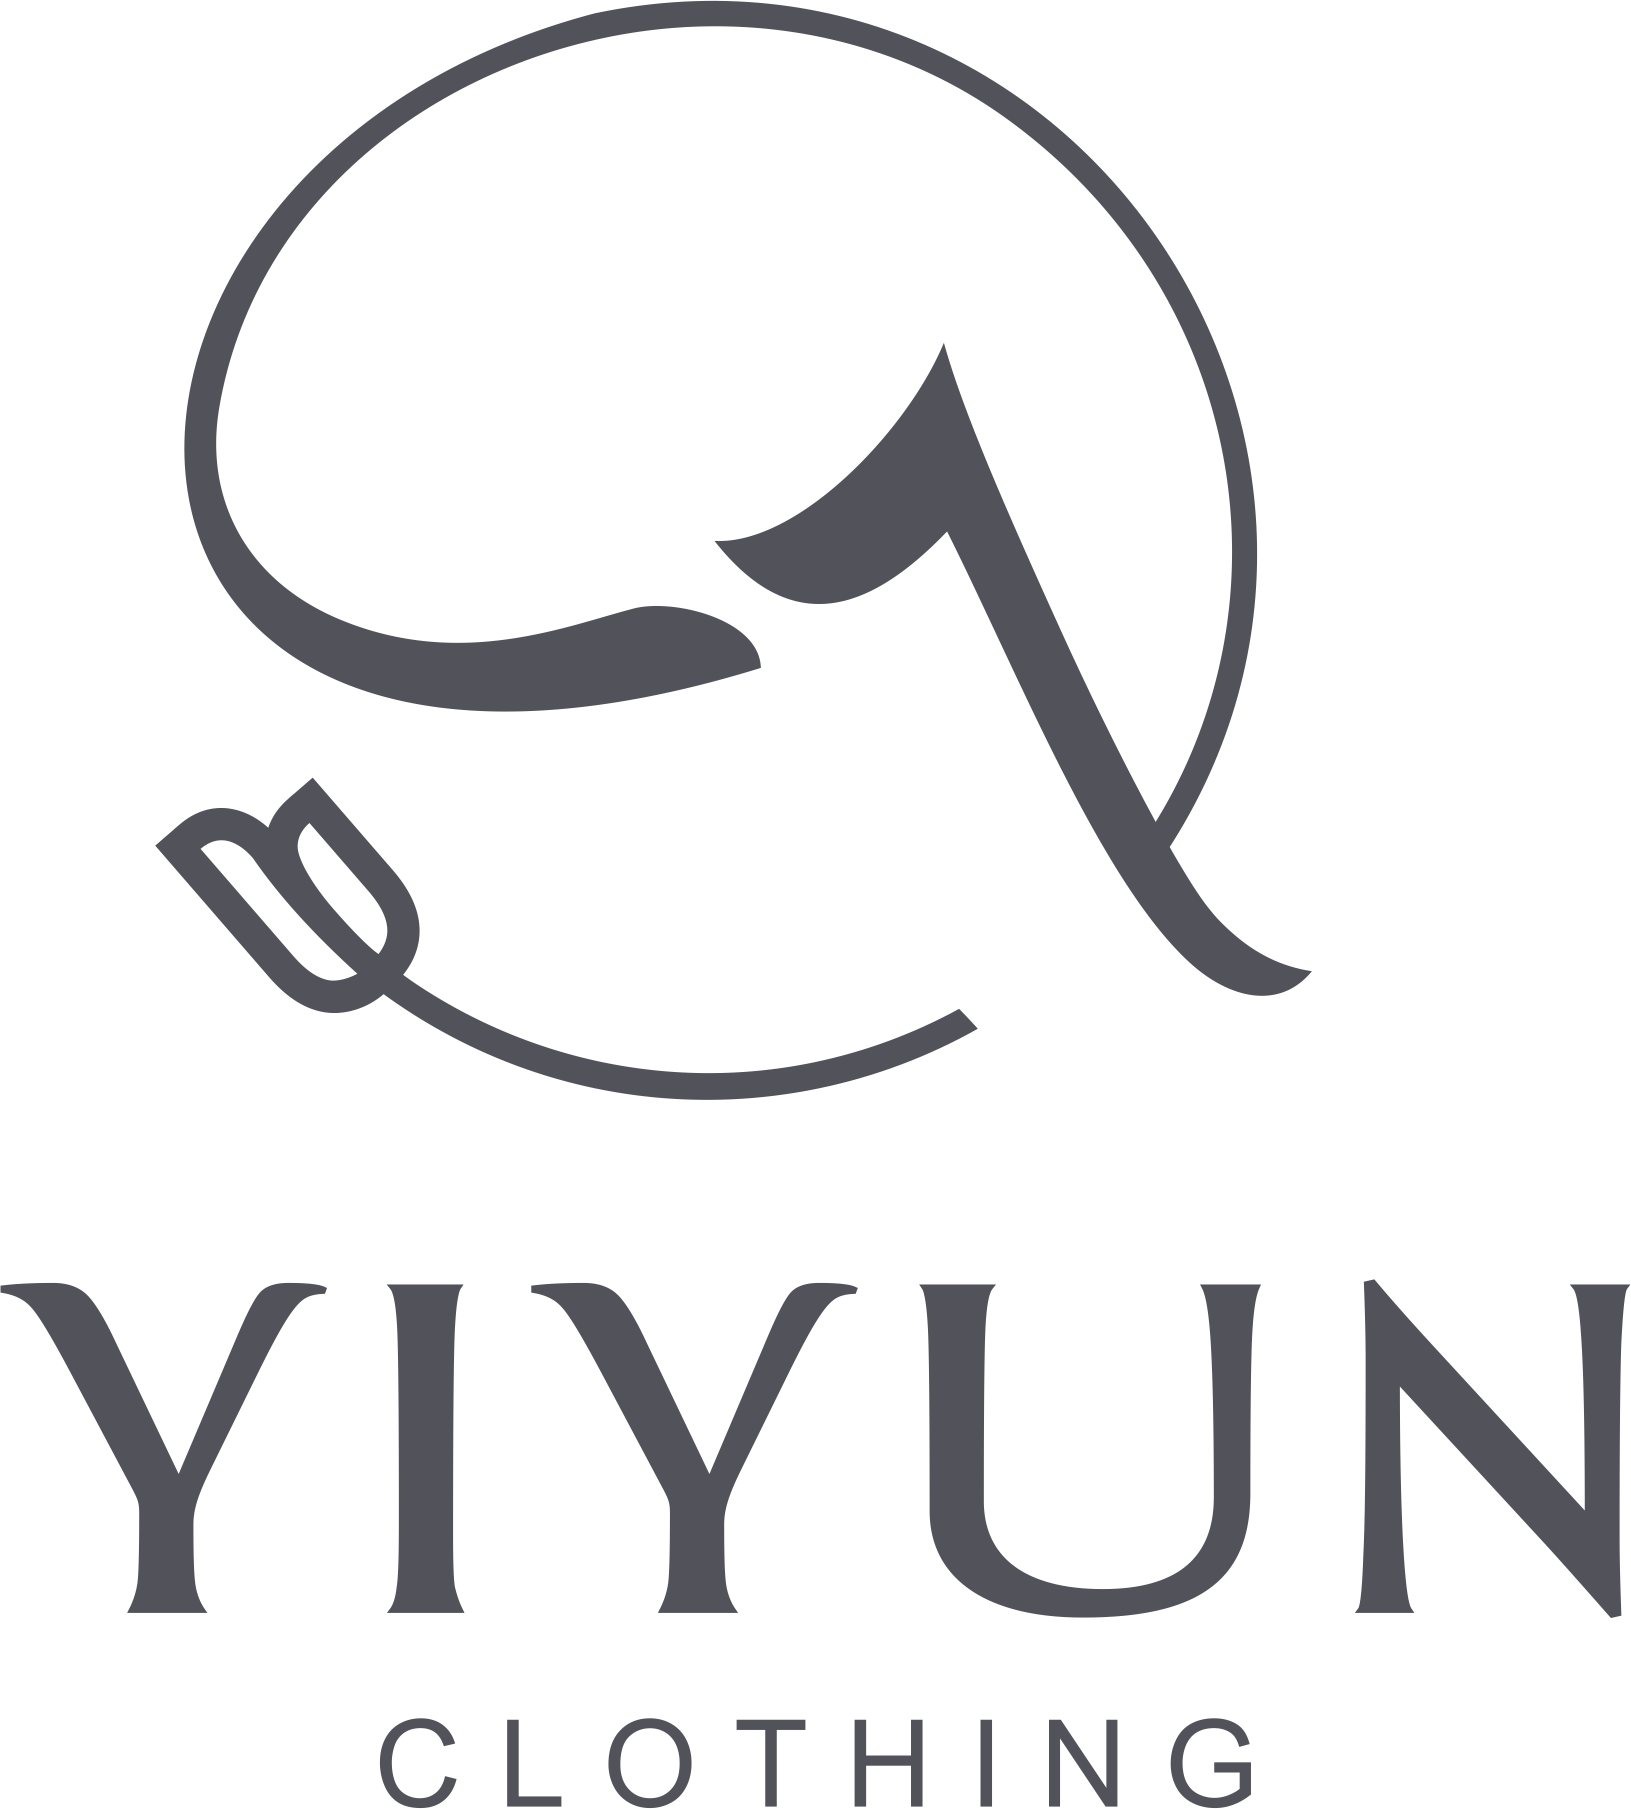 YIYUN CLOTHING(LOGO透明格式